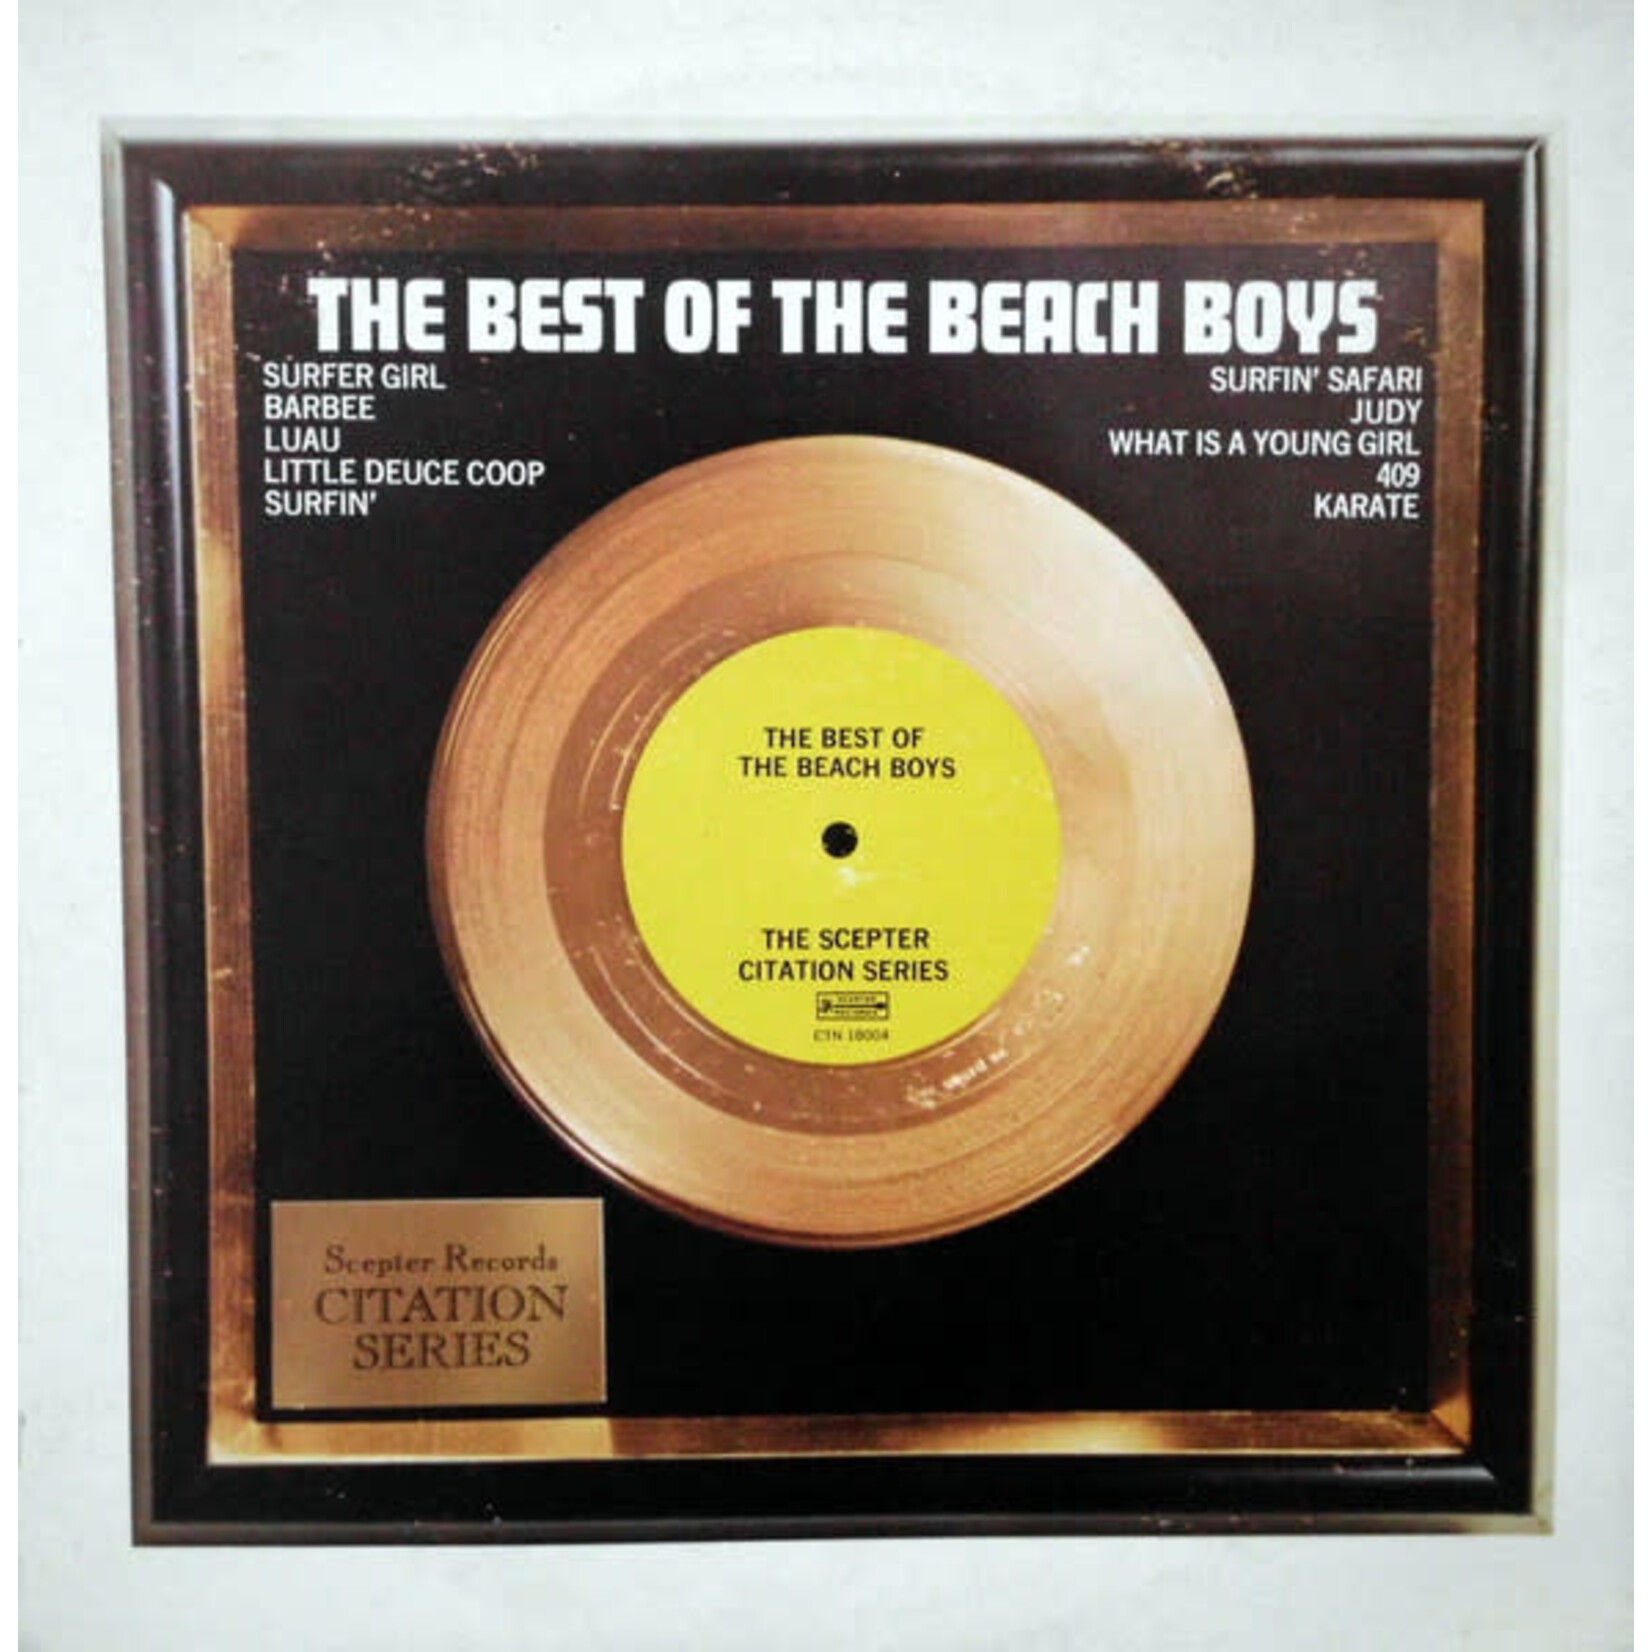 The Beach Boys – The Beach Boys' Greatest Hits: 1961-1963 (VG, 1972, LP, Scepter Records – CTN 18004) SCAZ